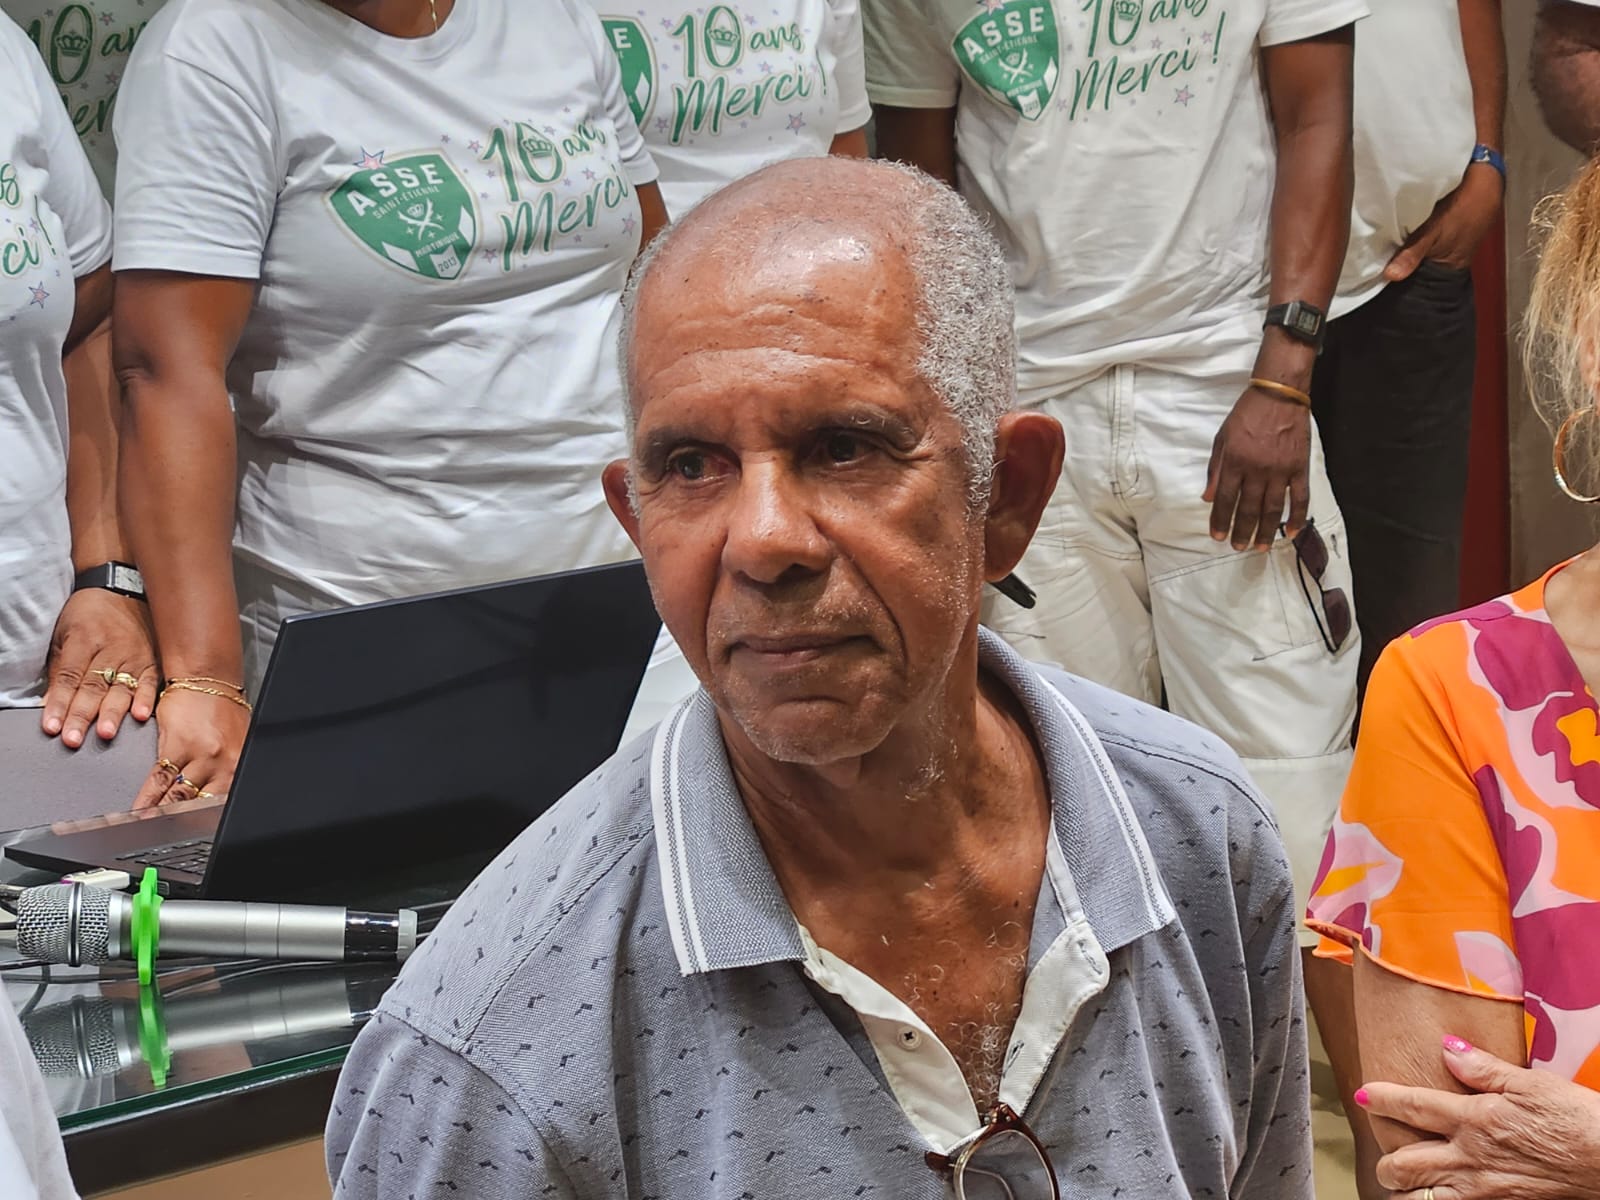     Deux photographes martiniquais célébrés par l'Amicale des Supporters Stéphanois de Martinique

